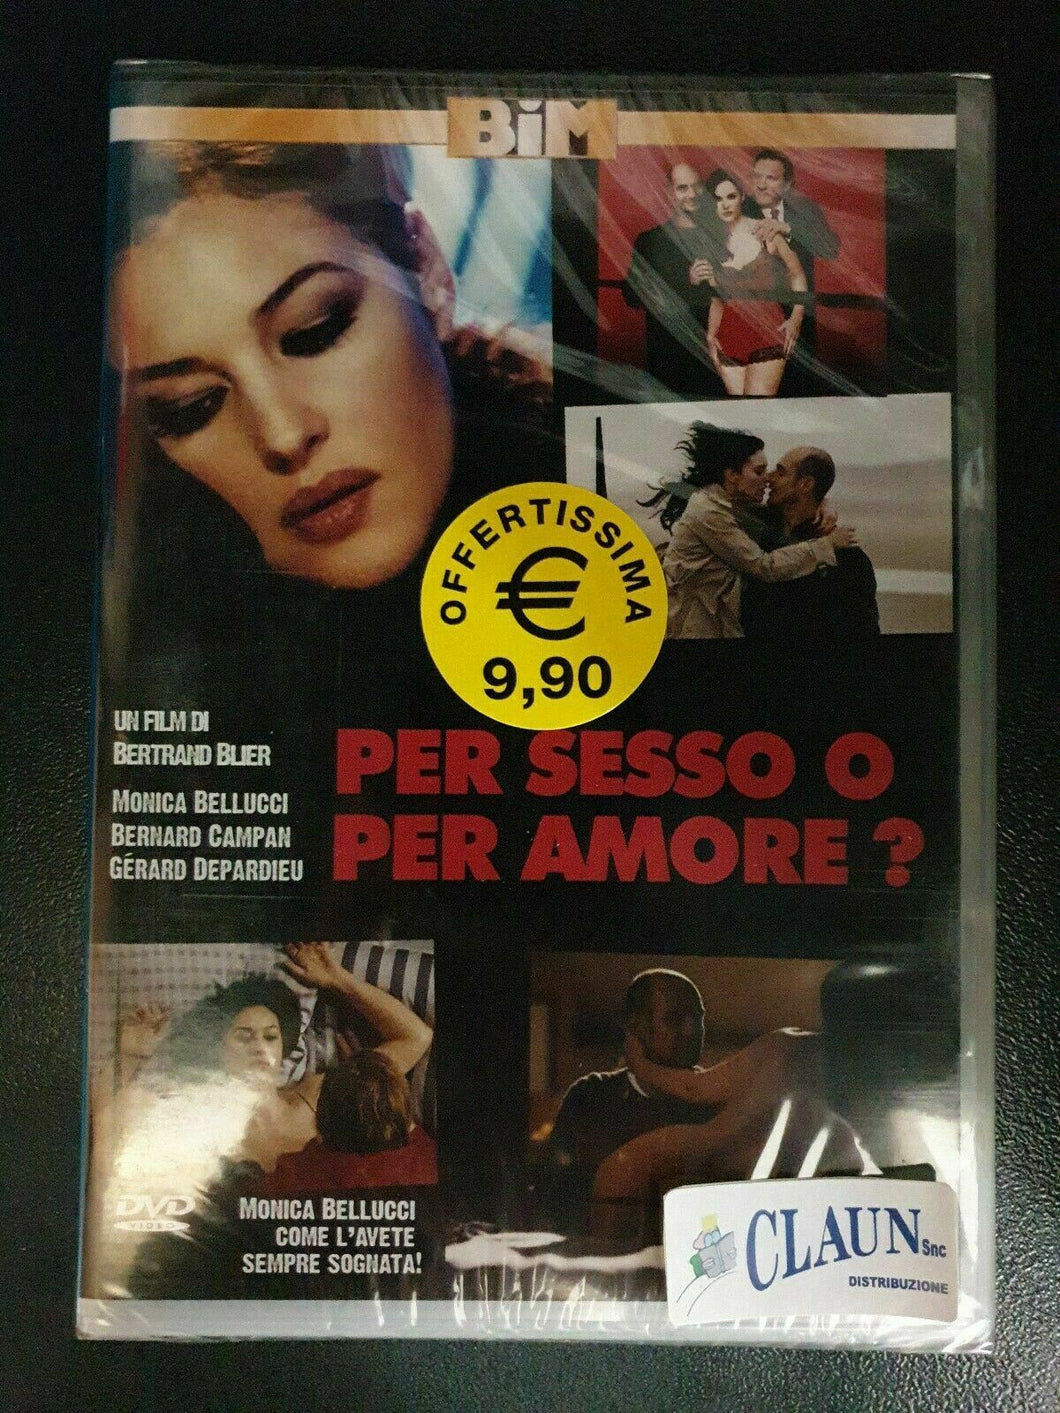 Per sesso o per amore? (2005) DVD   Nuovo